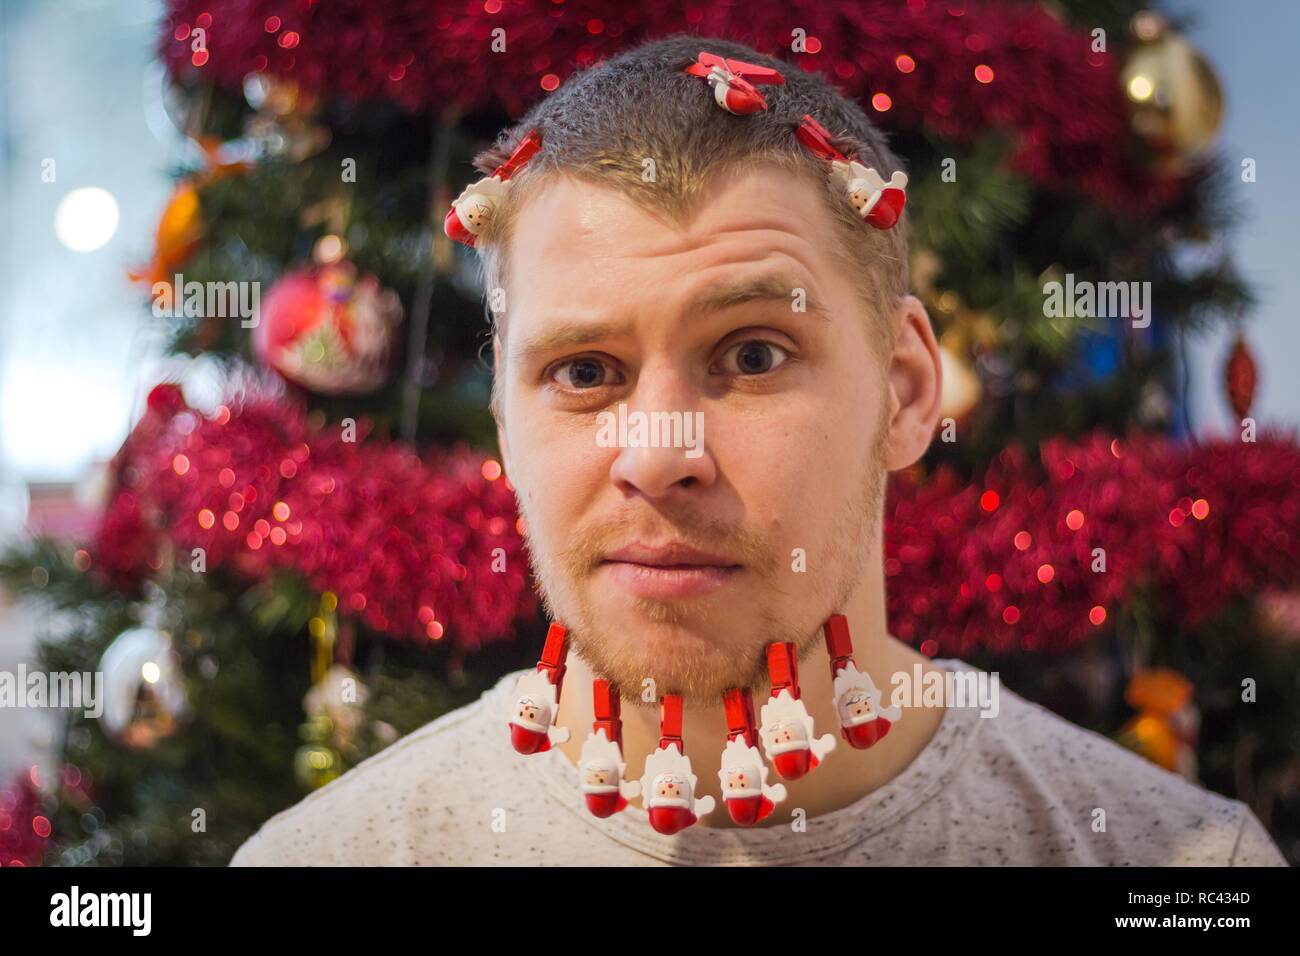 Ein junger und hübscher Kerl mit Bart auf dem Hintergrund der einen Weihnachtsbaum. Wäscheklammern von roter Farbe auf den Bart von der Kerl. Stockfoto